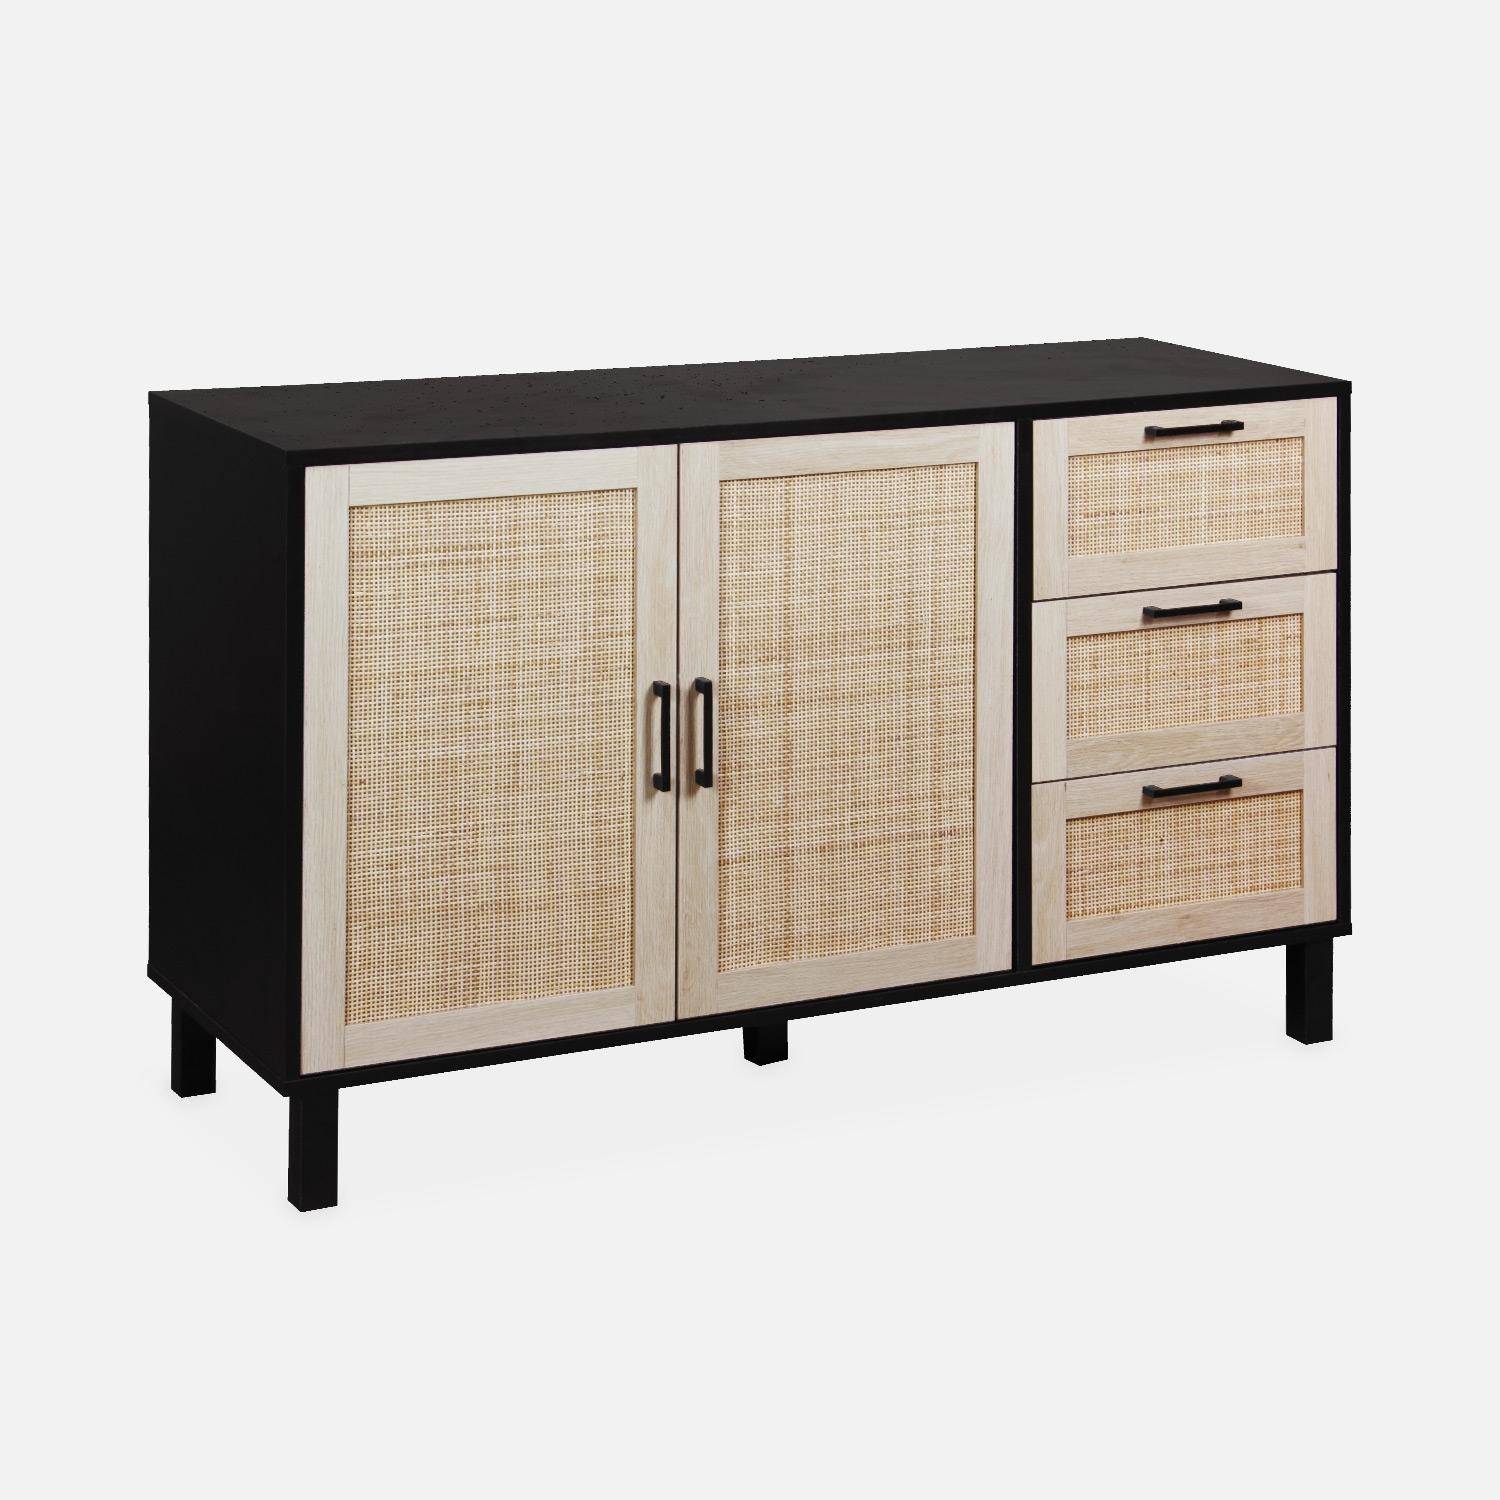 Black and cane sideboard 120 x 40 x 75cm - Bianca - 3 drawers, 2 doors, 2 levels, 1 shelf,sweeek,Photo3